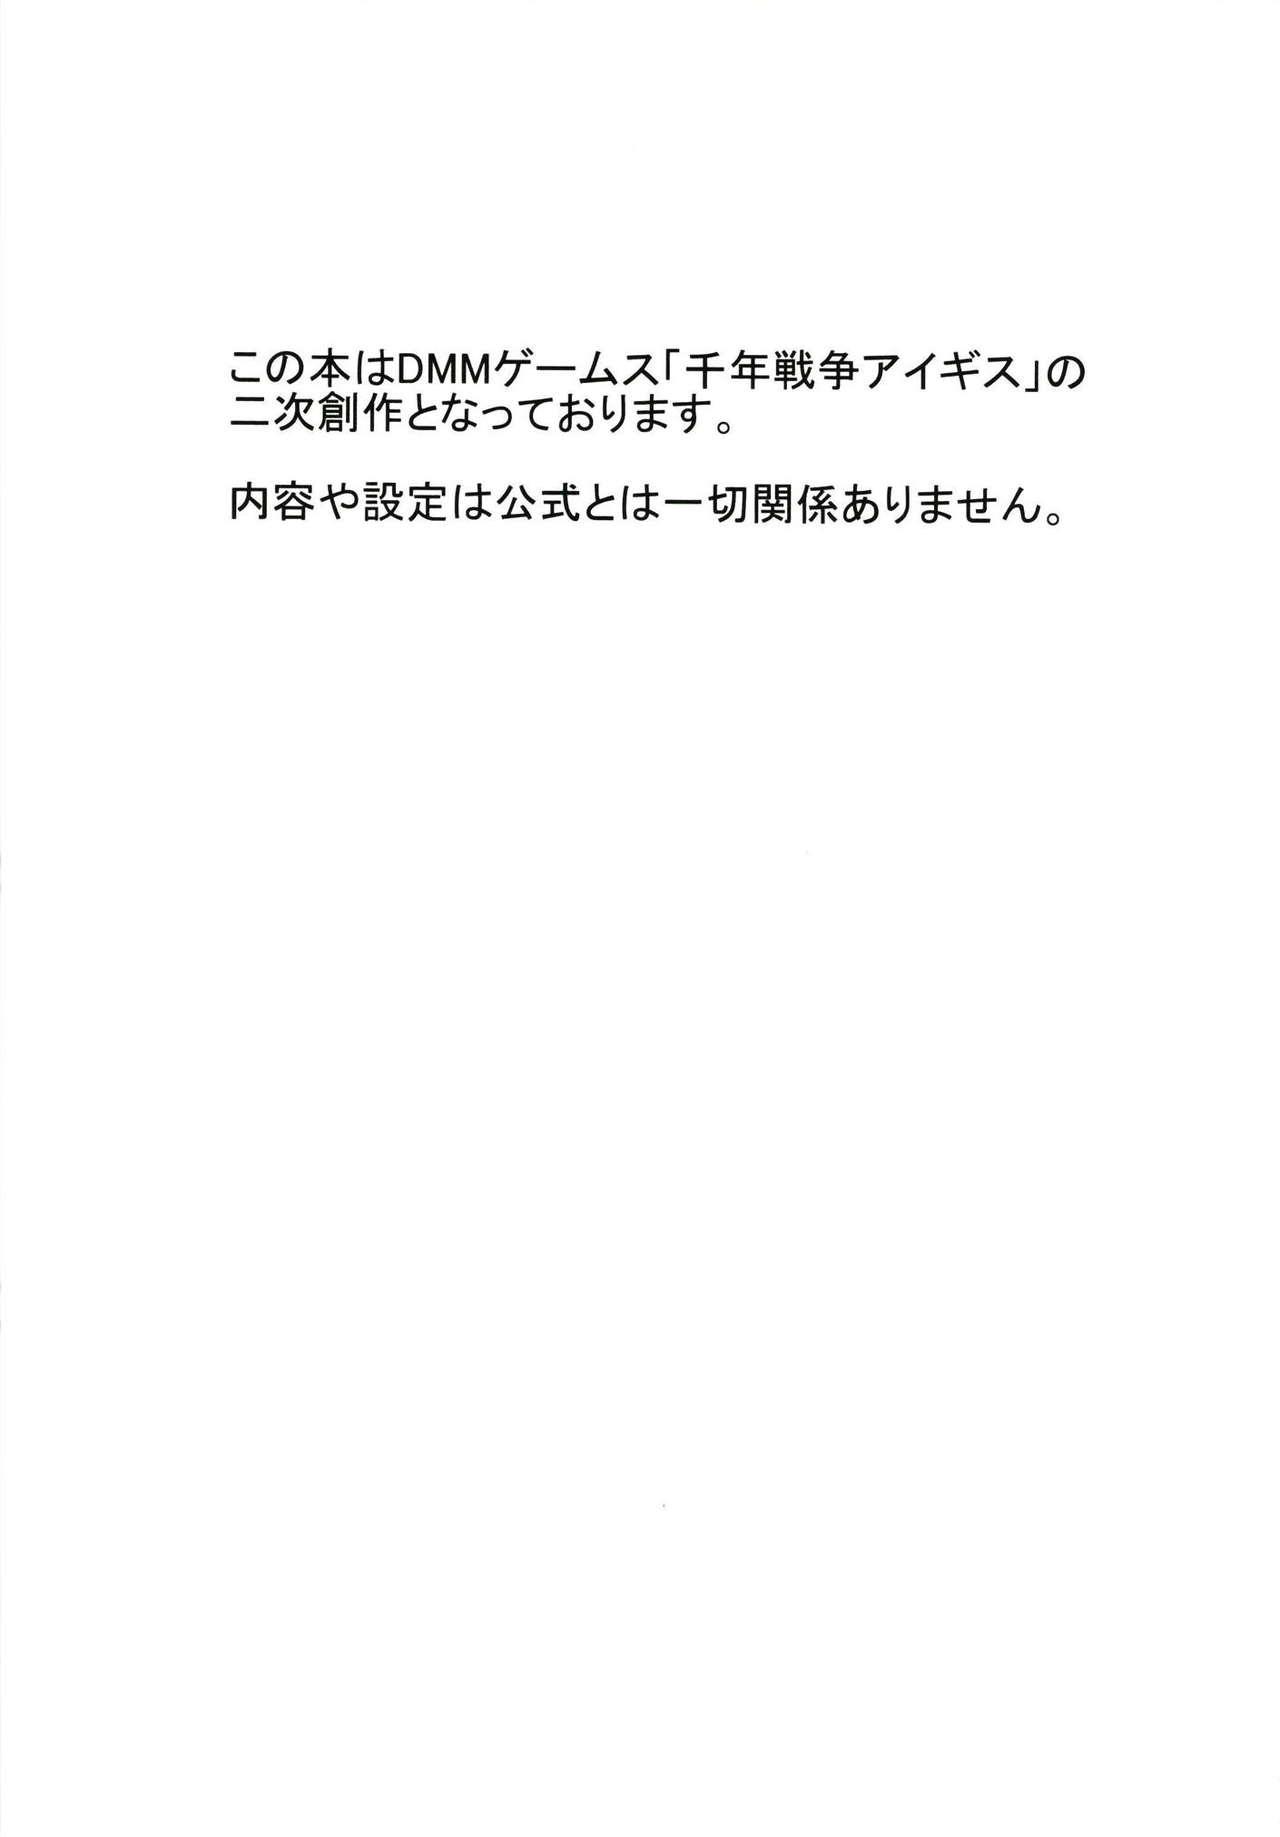 Officesex Koukando Item ja Kimi no Kokoro wa Hiraka Nai - Sennen sensou aigis Cavalgando - Page 2